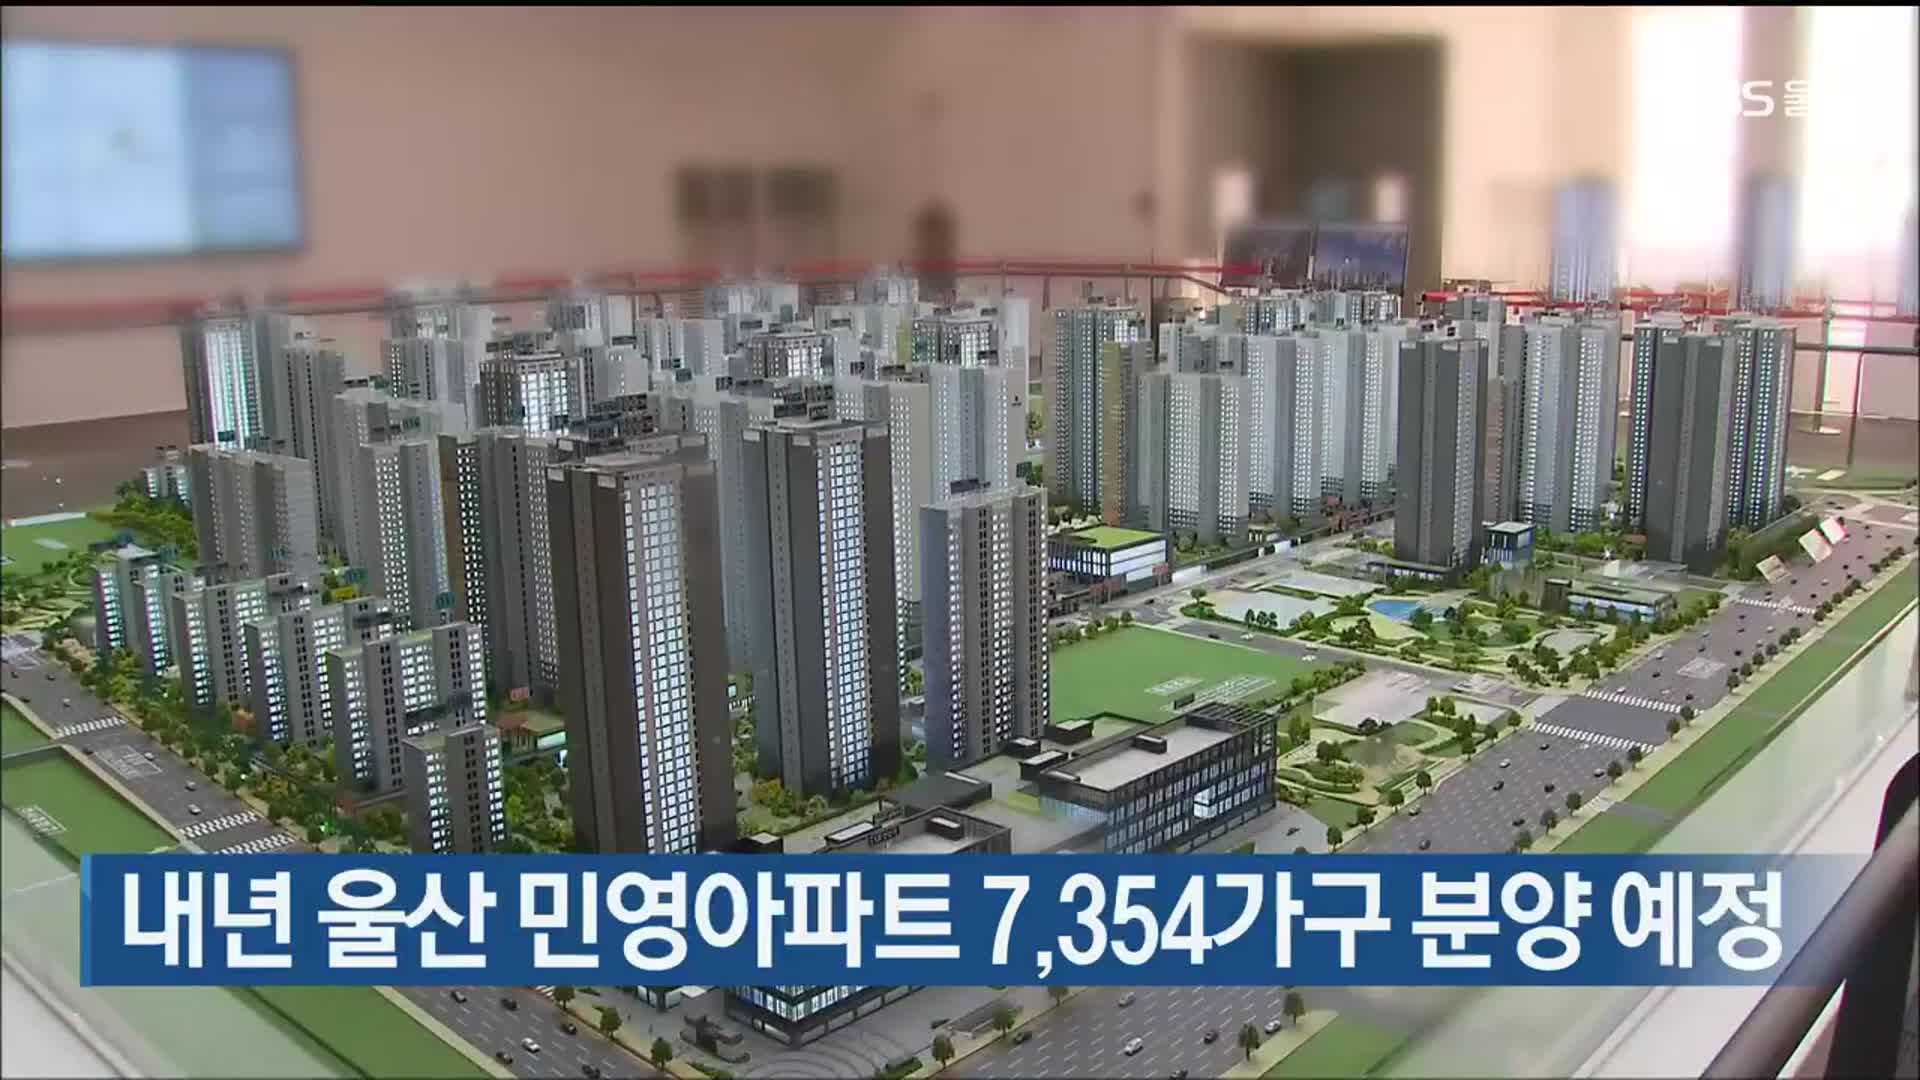 내년 울산 민영아파트 7,354가구 분양 예정